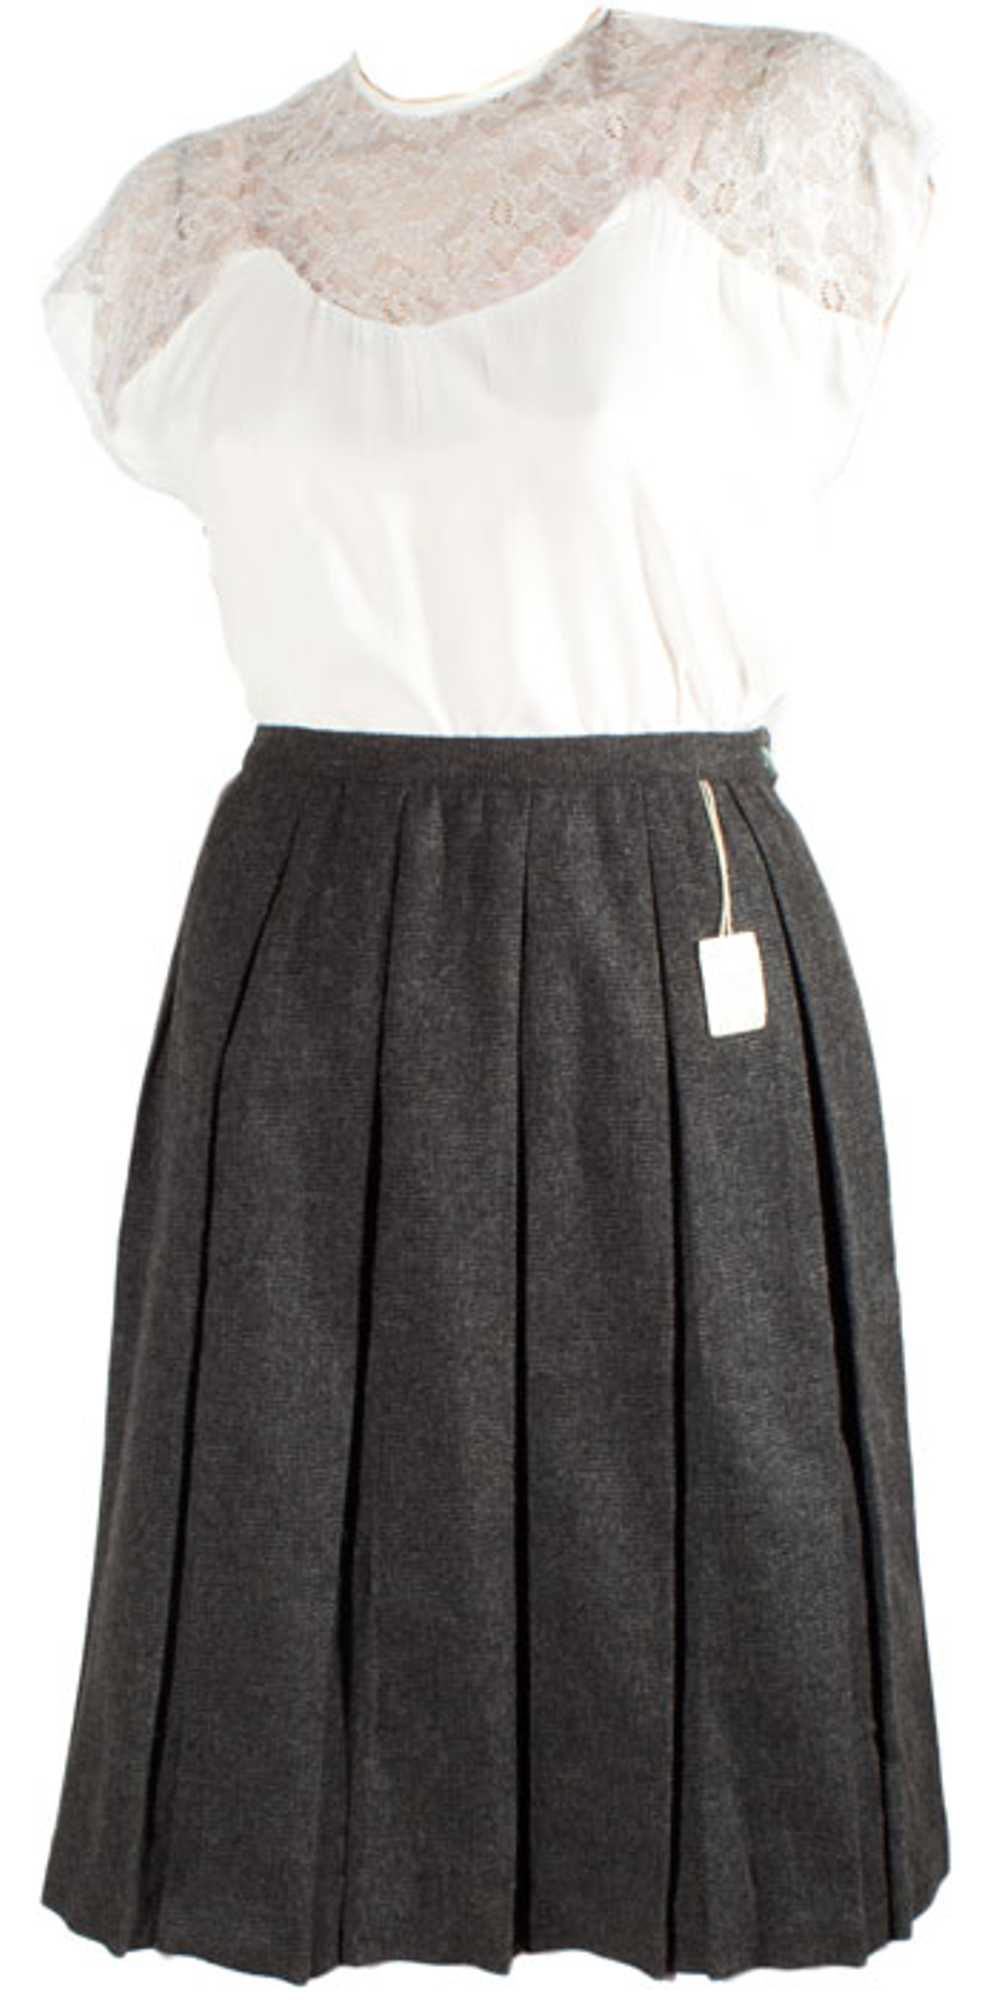 Vintage Pleated Collegiate Skirt - image 2